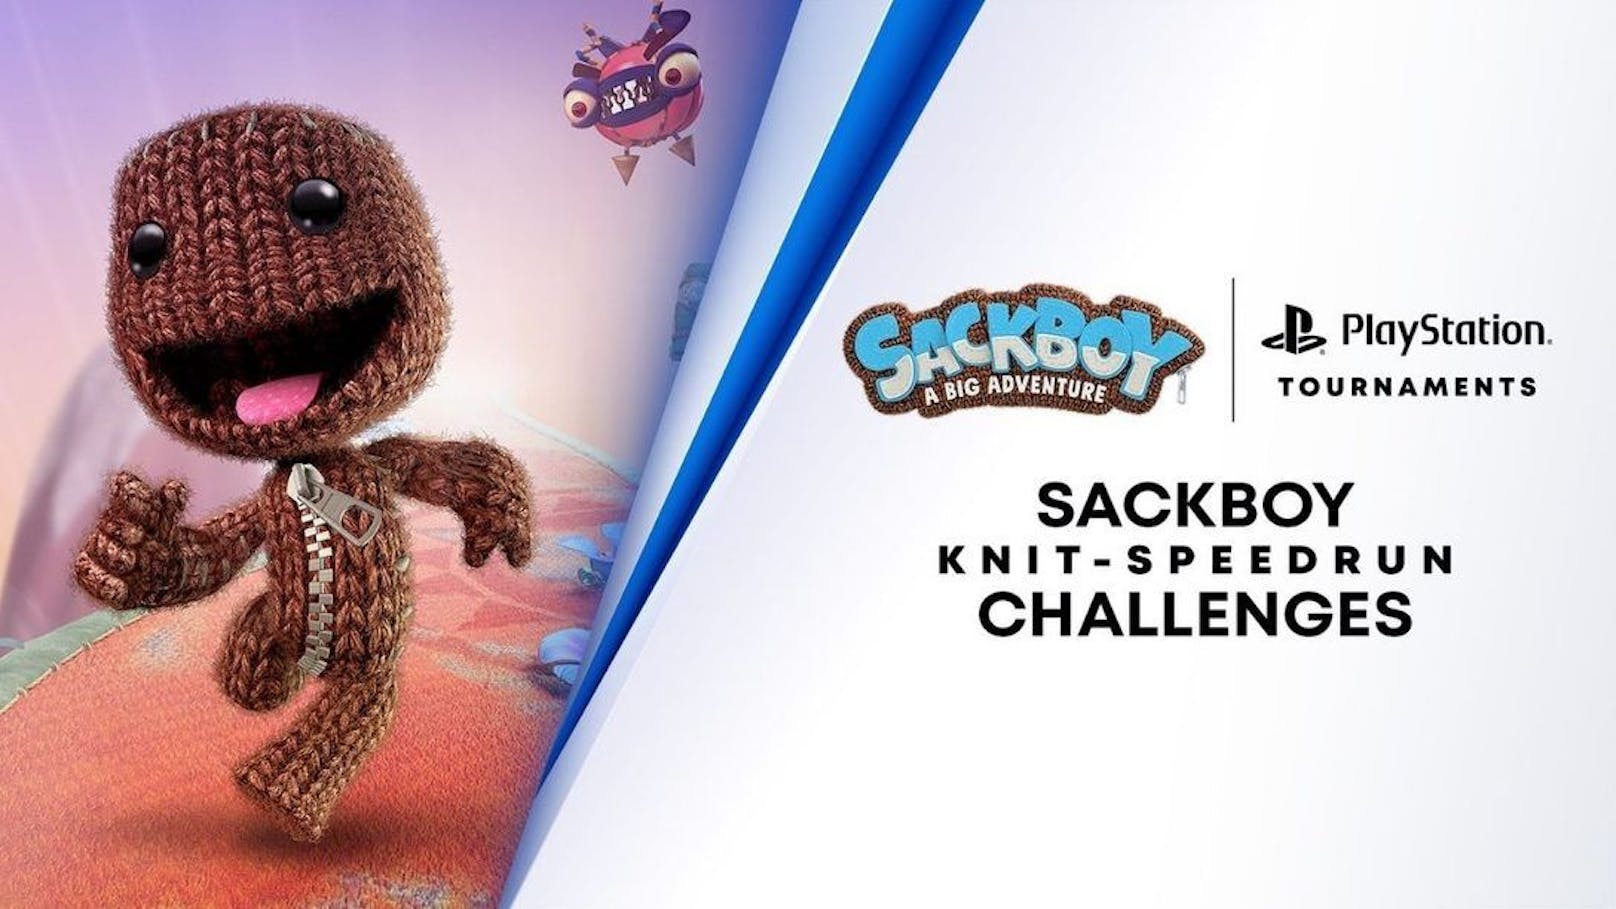 PS5-Turniere starten mit der "Strick-Speedrun-Herausforderung" in "Sackboy: A Big Adventure".